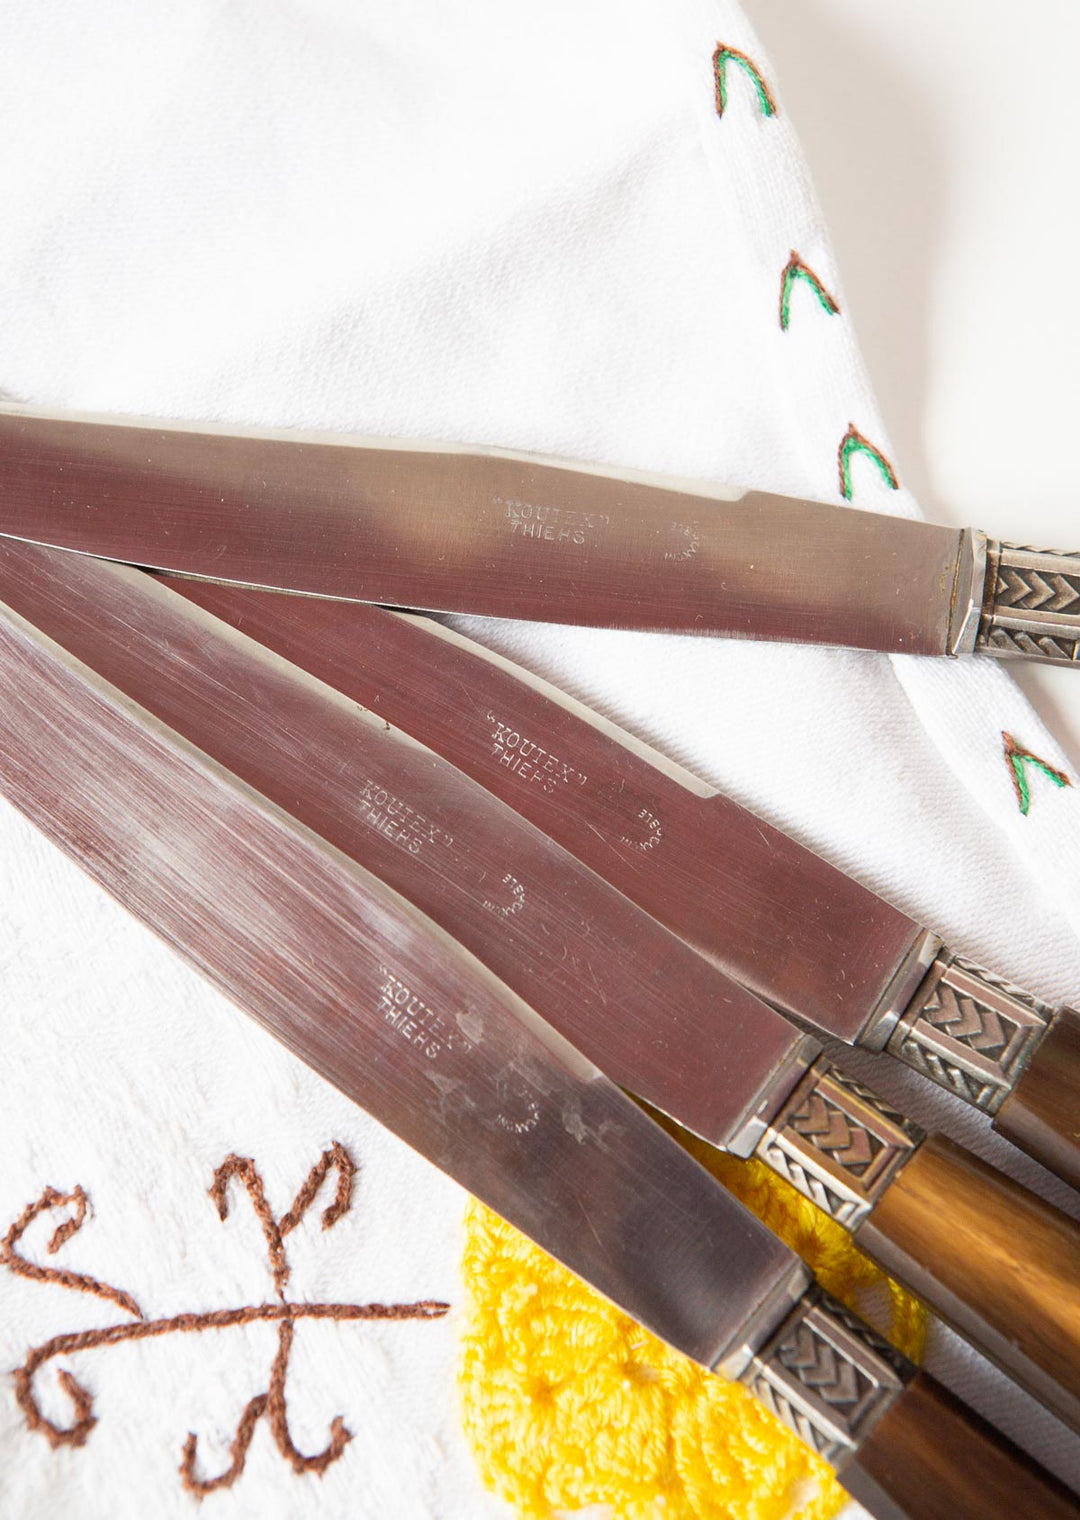 Juego de antiguos cuchillos franceses mango asta en estuche french knives